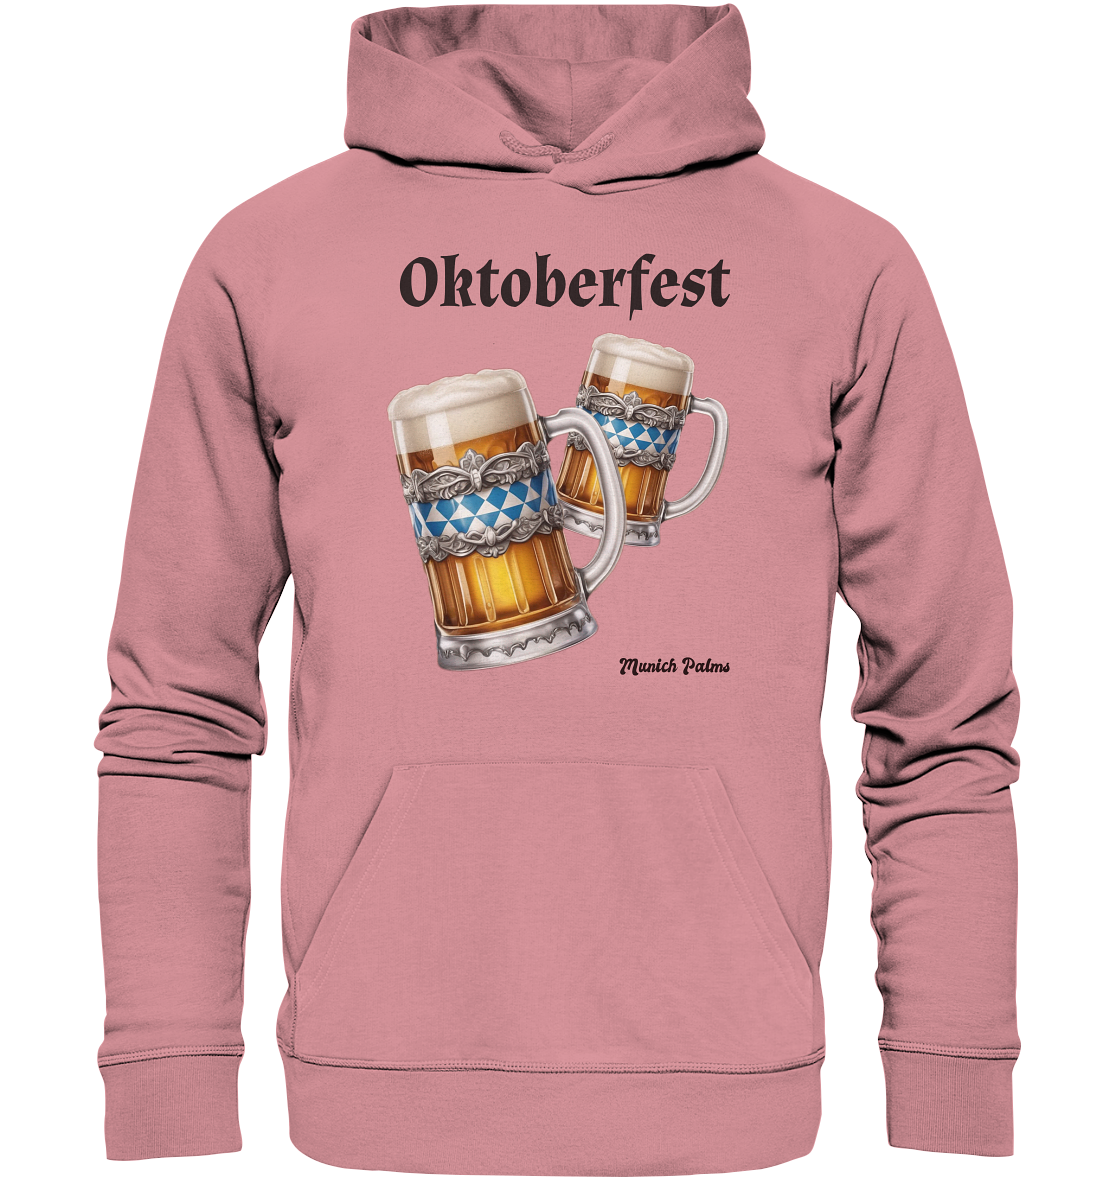 Oktoberfest Maßkrüge mit  bayrischer Raute Design by Munich Palms - Organic Basic Hoodie